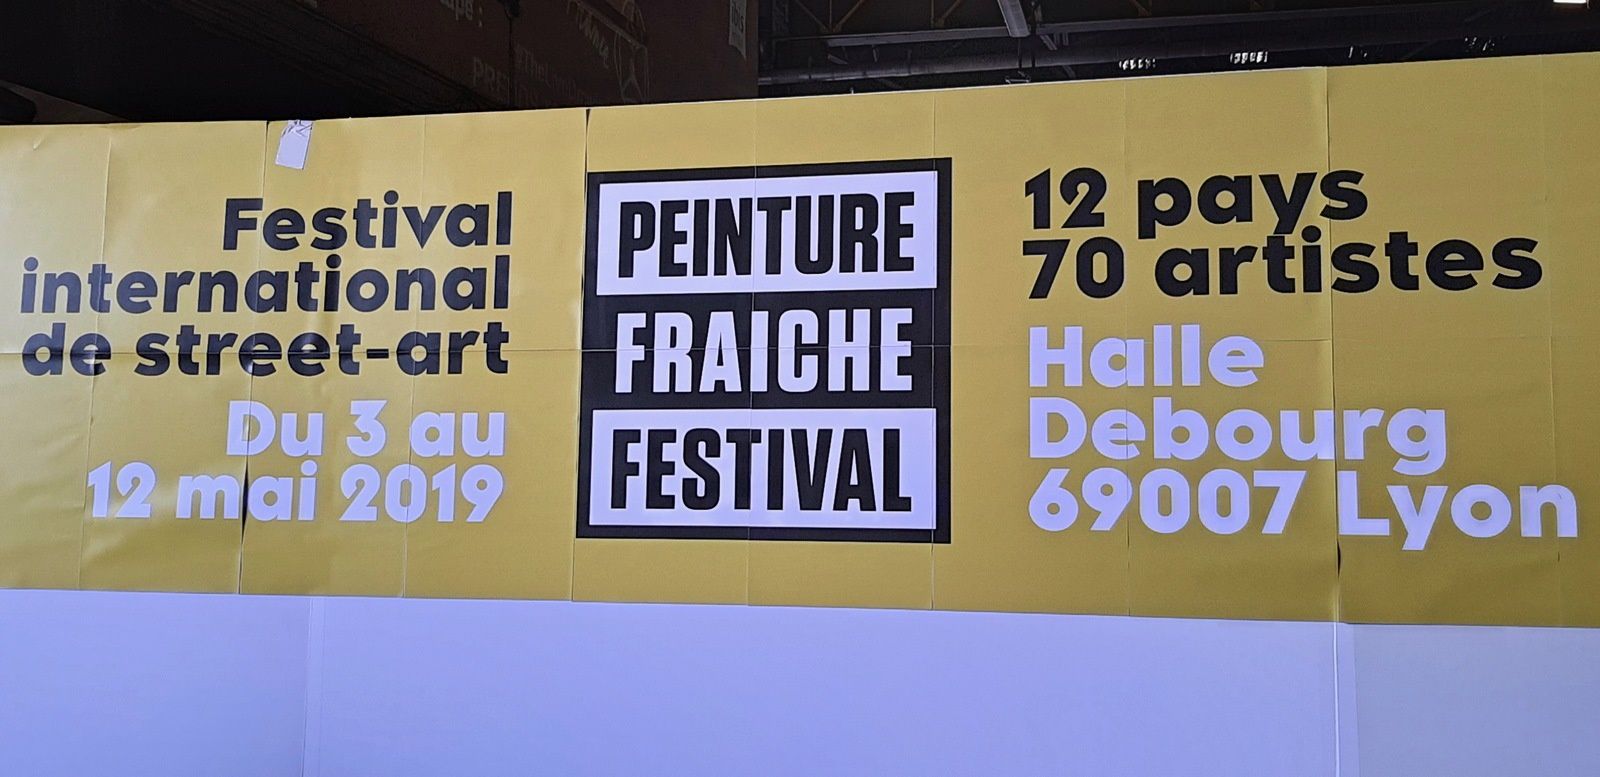 1ER Festival Peinture fraiche à Lyon, mai 2019. A274